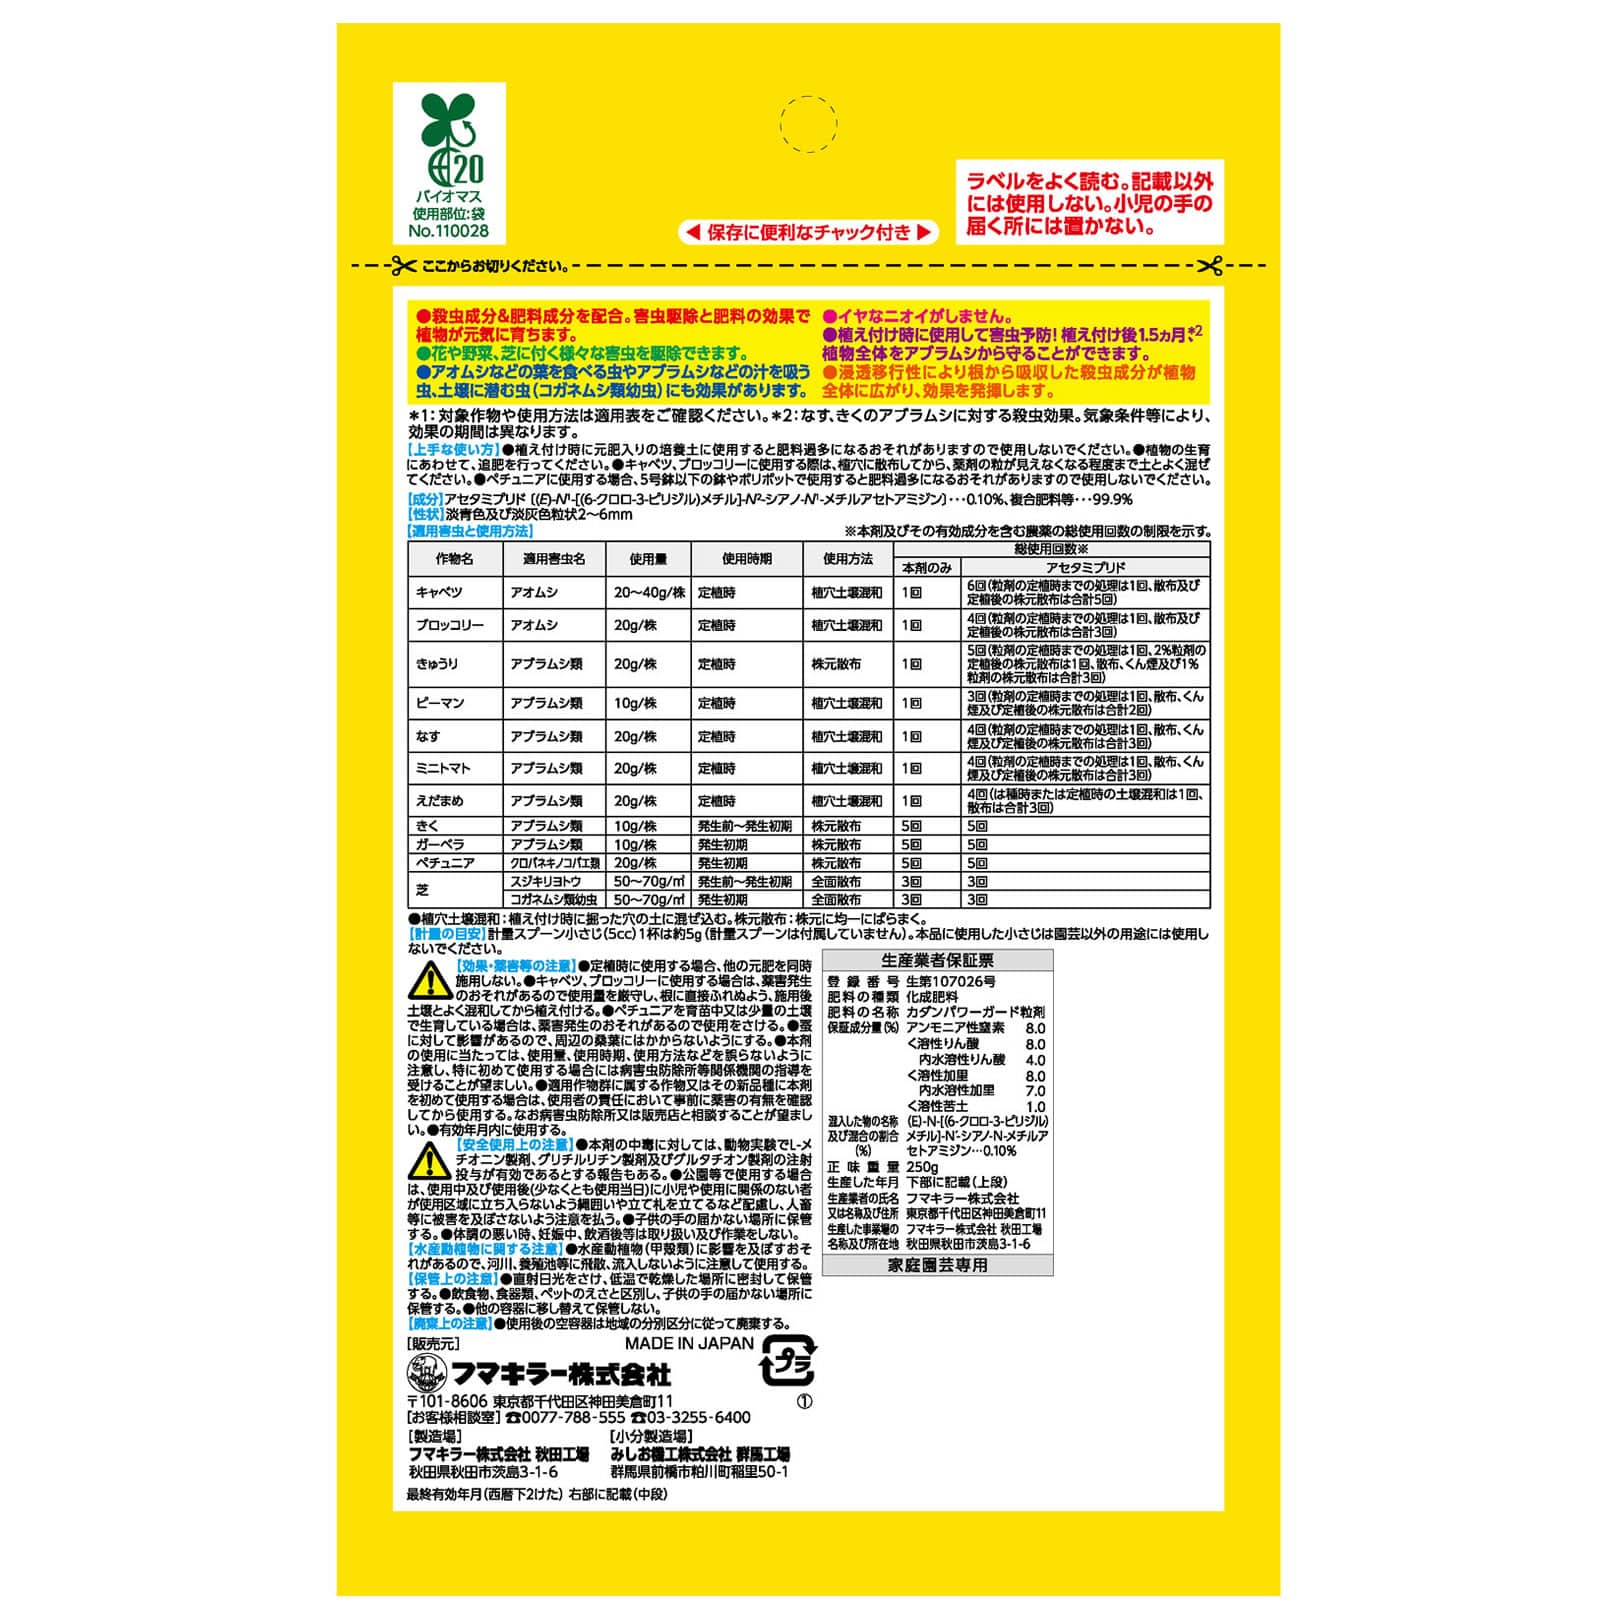 フマキラー カダンパワーガード粒剤 (250g) 家庭園芸用 殺虫剤 肥料